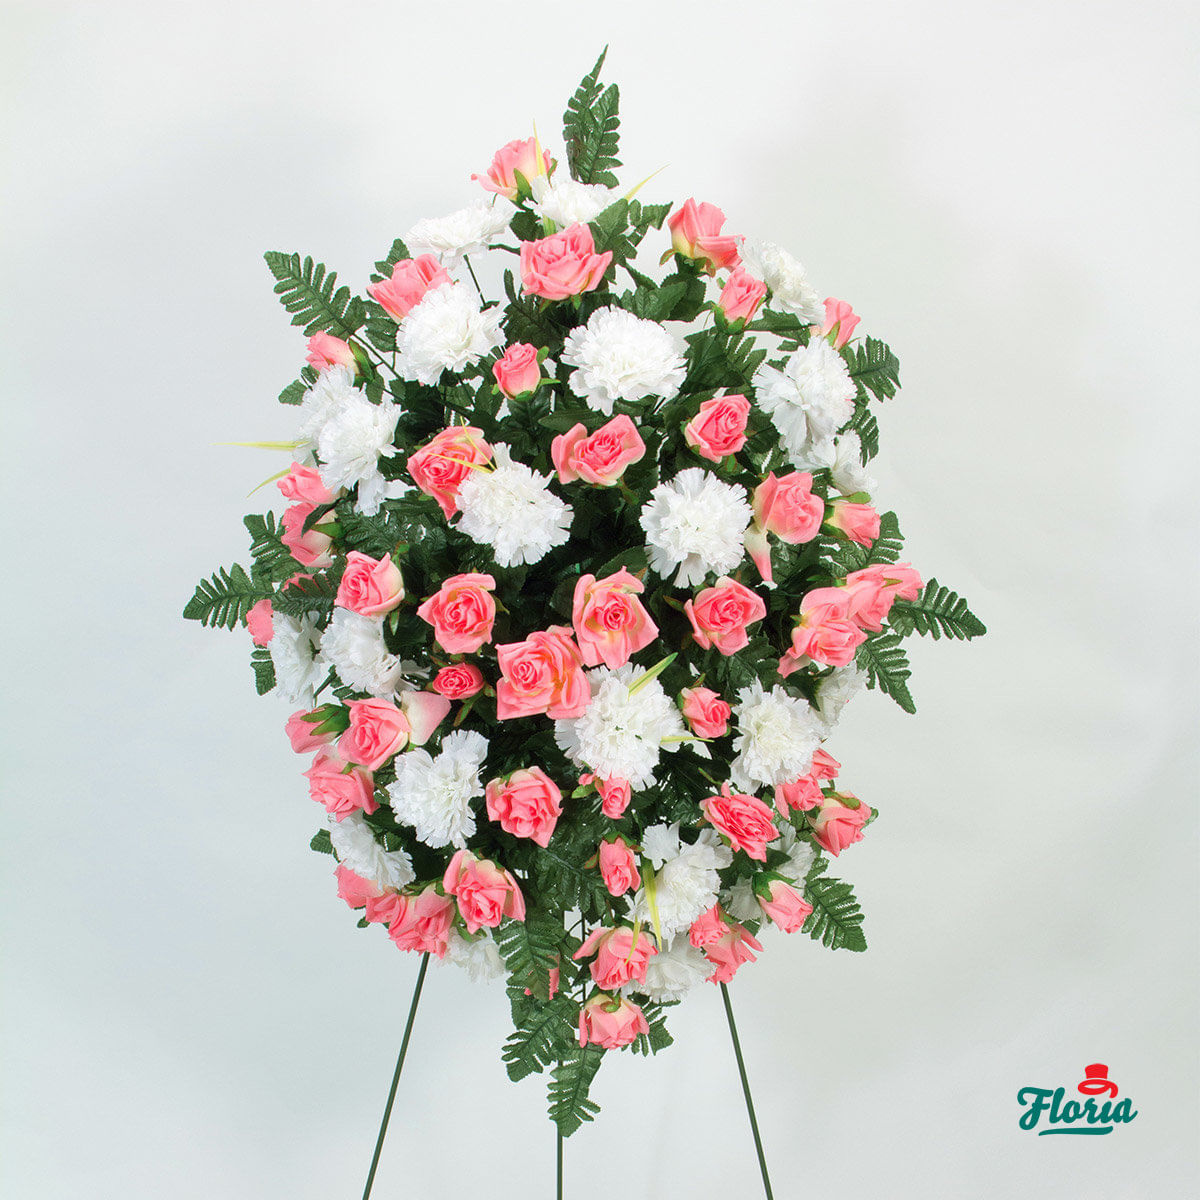 Cruce cu garoafe roz, crizanteme si frezii albe – Standard albe